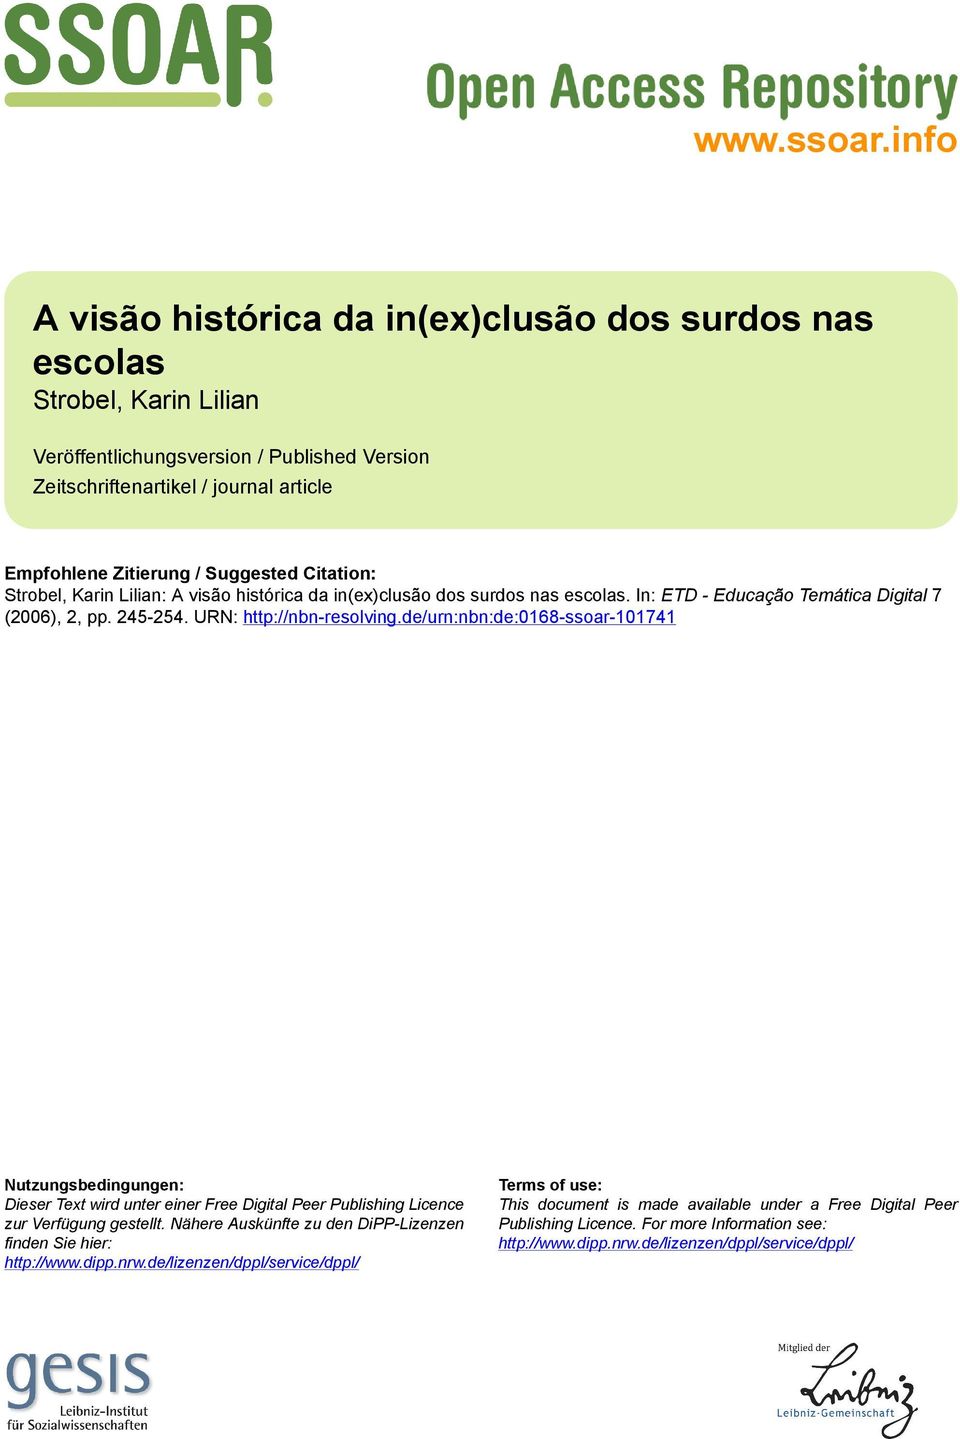 Suggested Citation: Strobel, Karin Lilian: A visão histórica da in(ex)clusão dos surdos nas escolas. In: ETD - Educação Temática Digital 7 (2006), 2, pp. 245-254. URN: http://nbn-resolving.